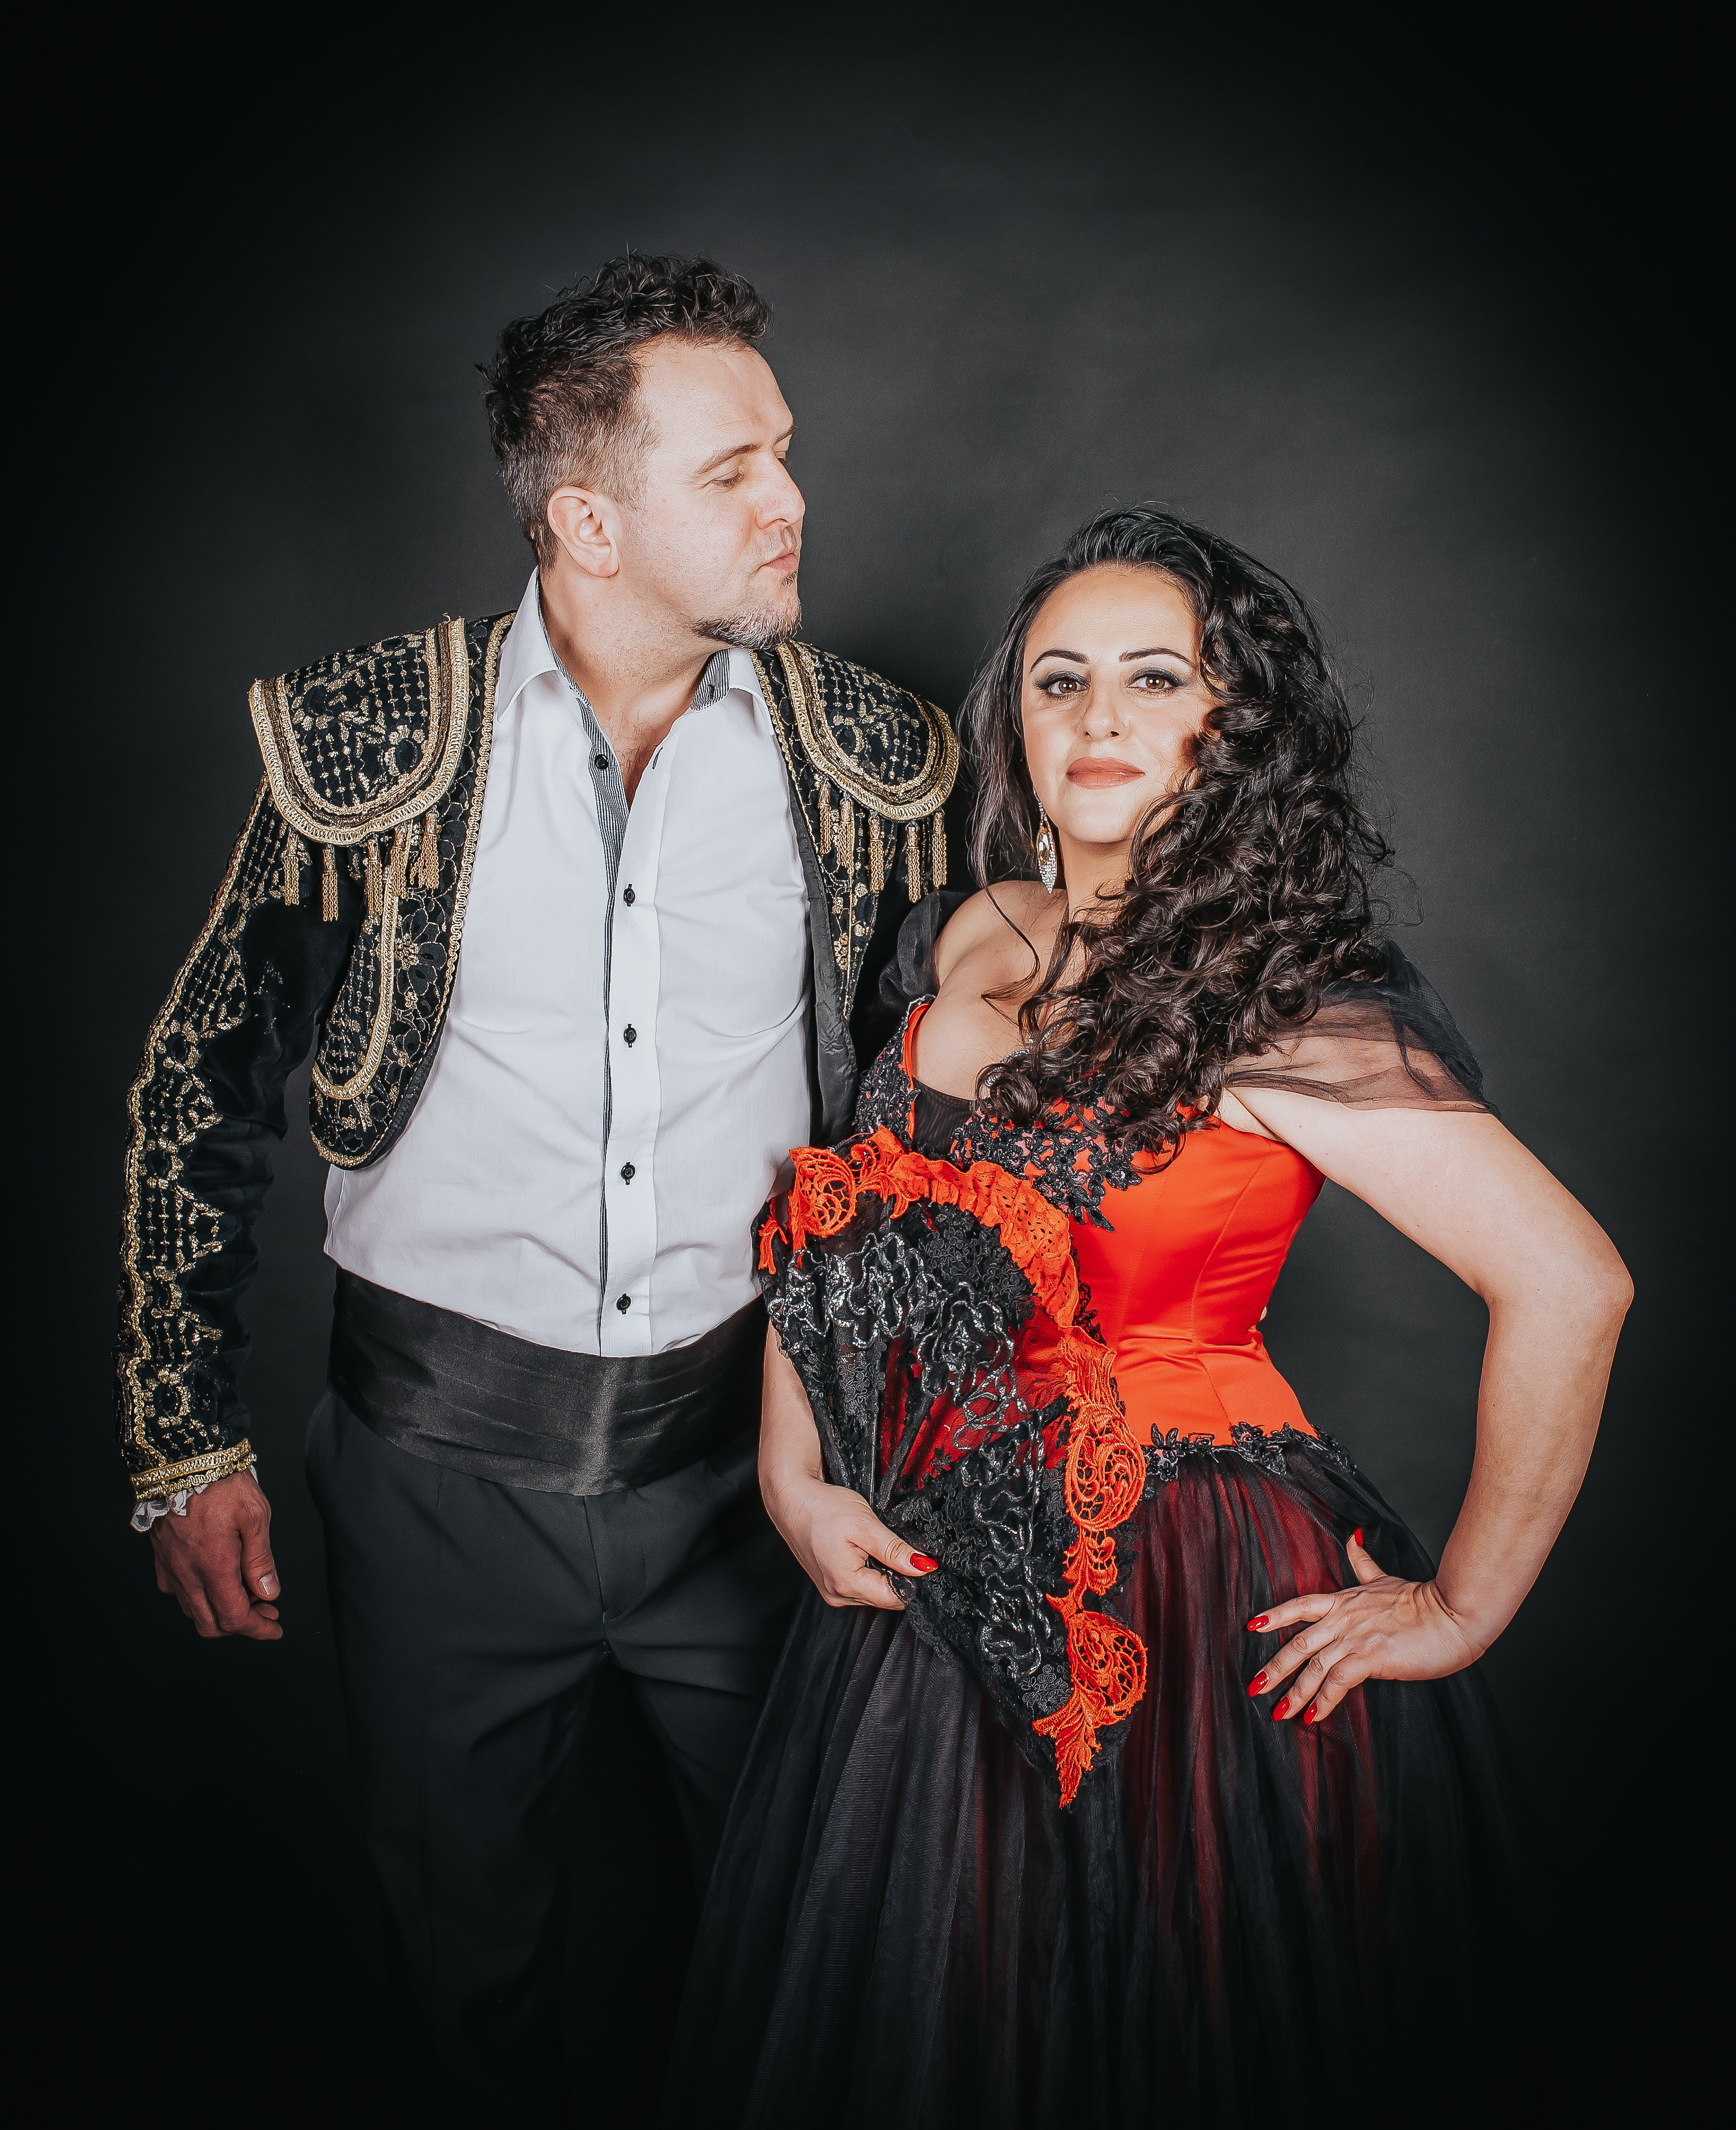 zdjęcie przedstawia duet śpiewaków Nairę Ayvazyan i Marcina Kotarbę